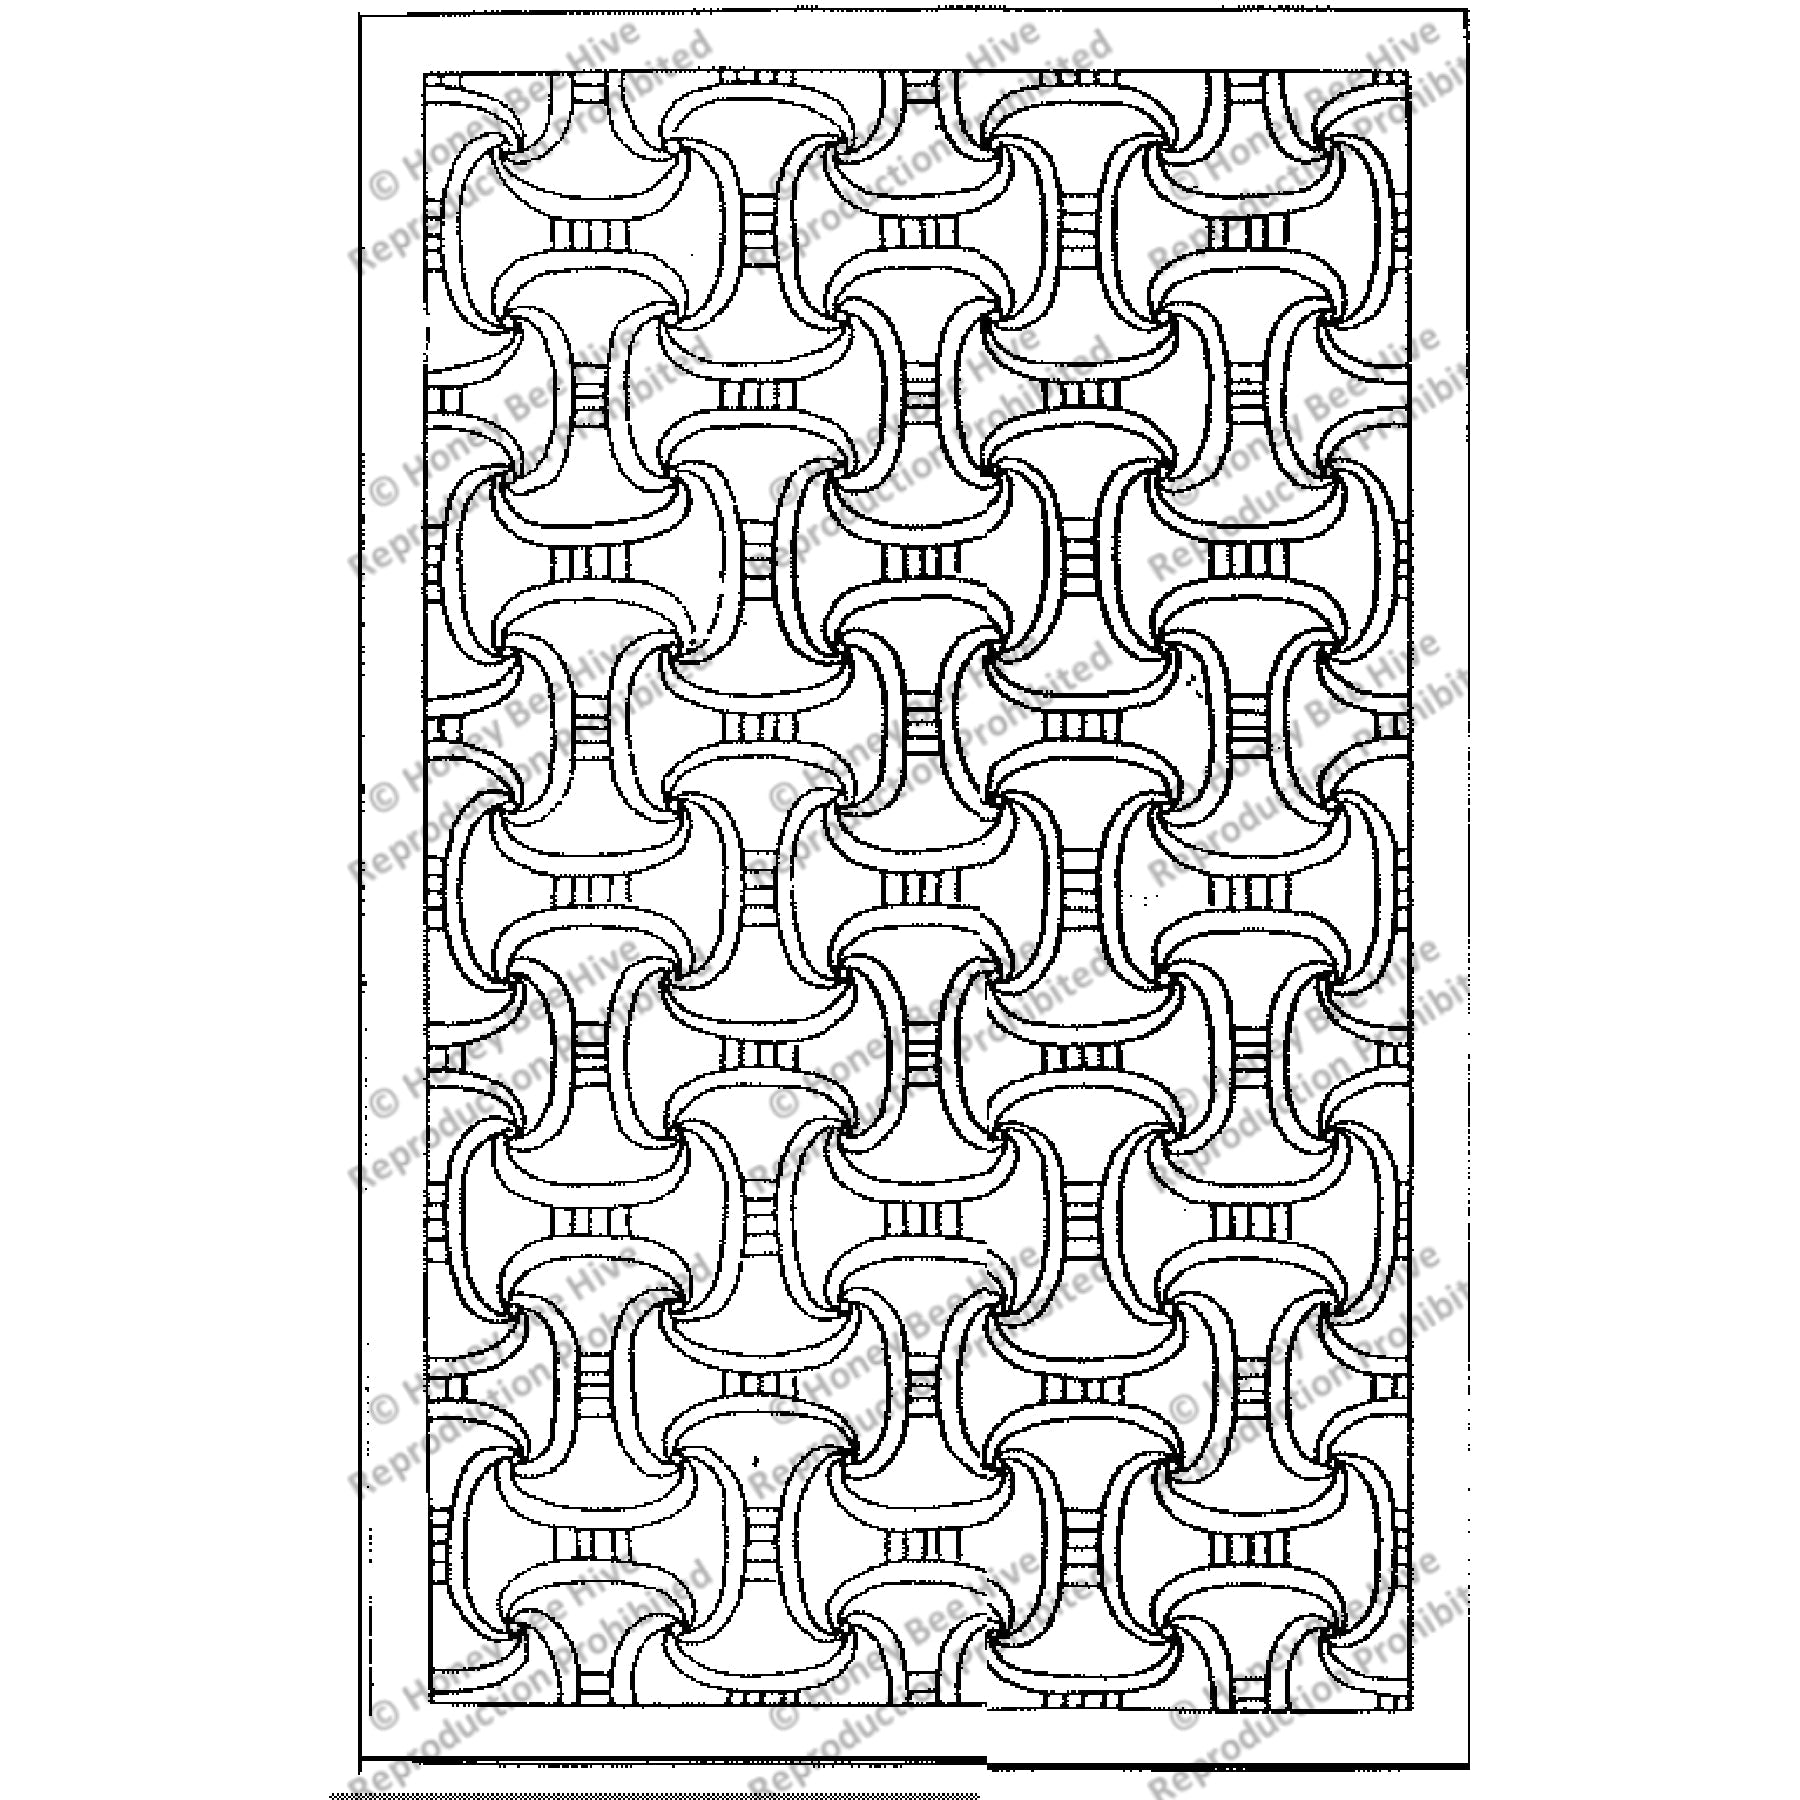 Symmetry, rug hooking pattern